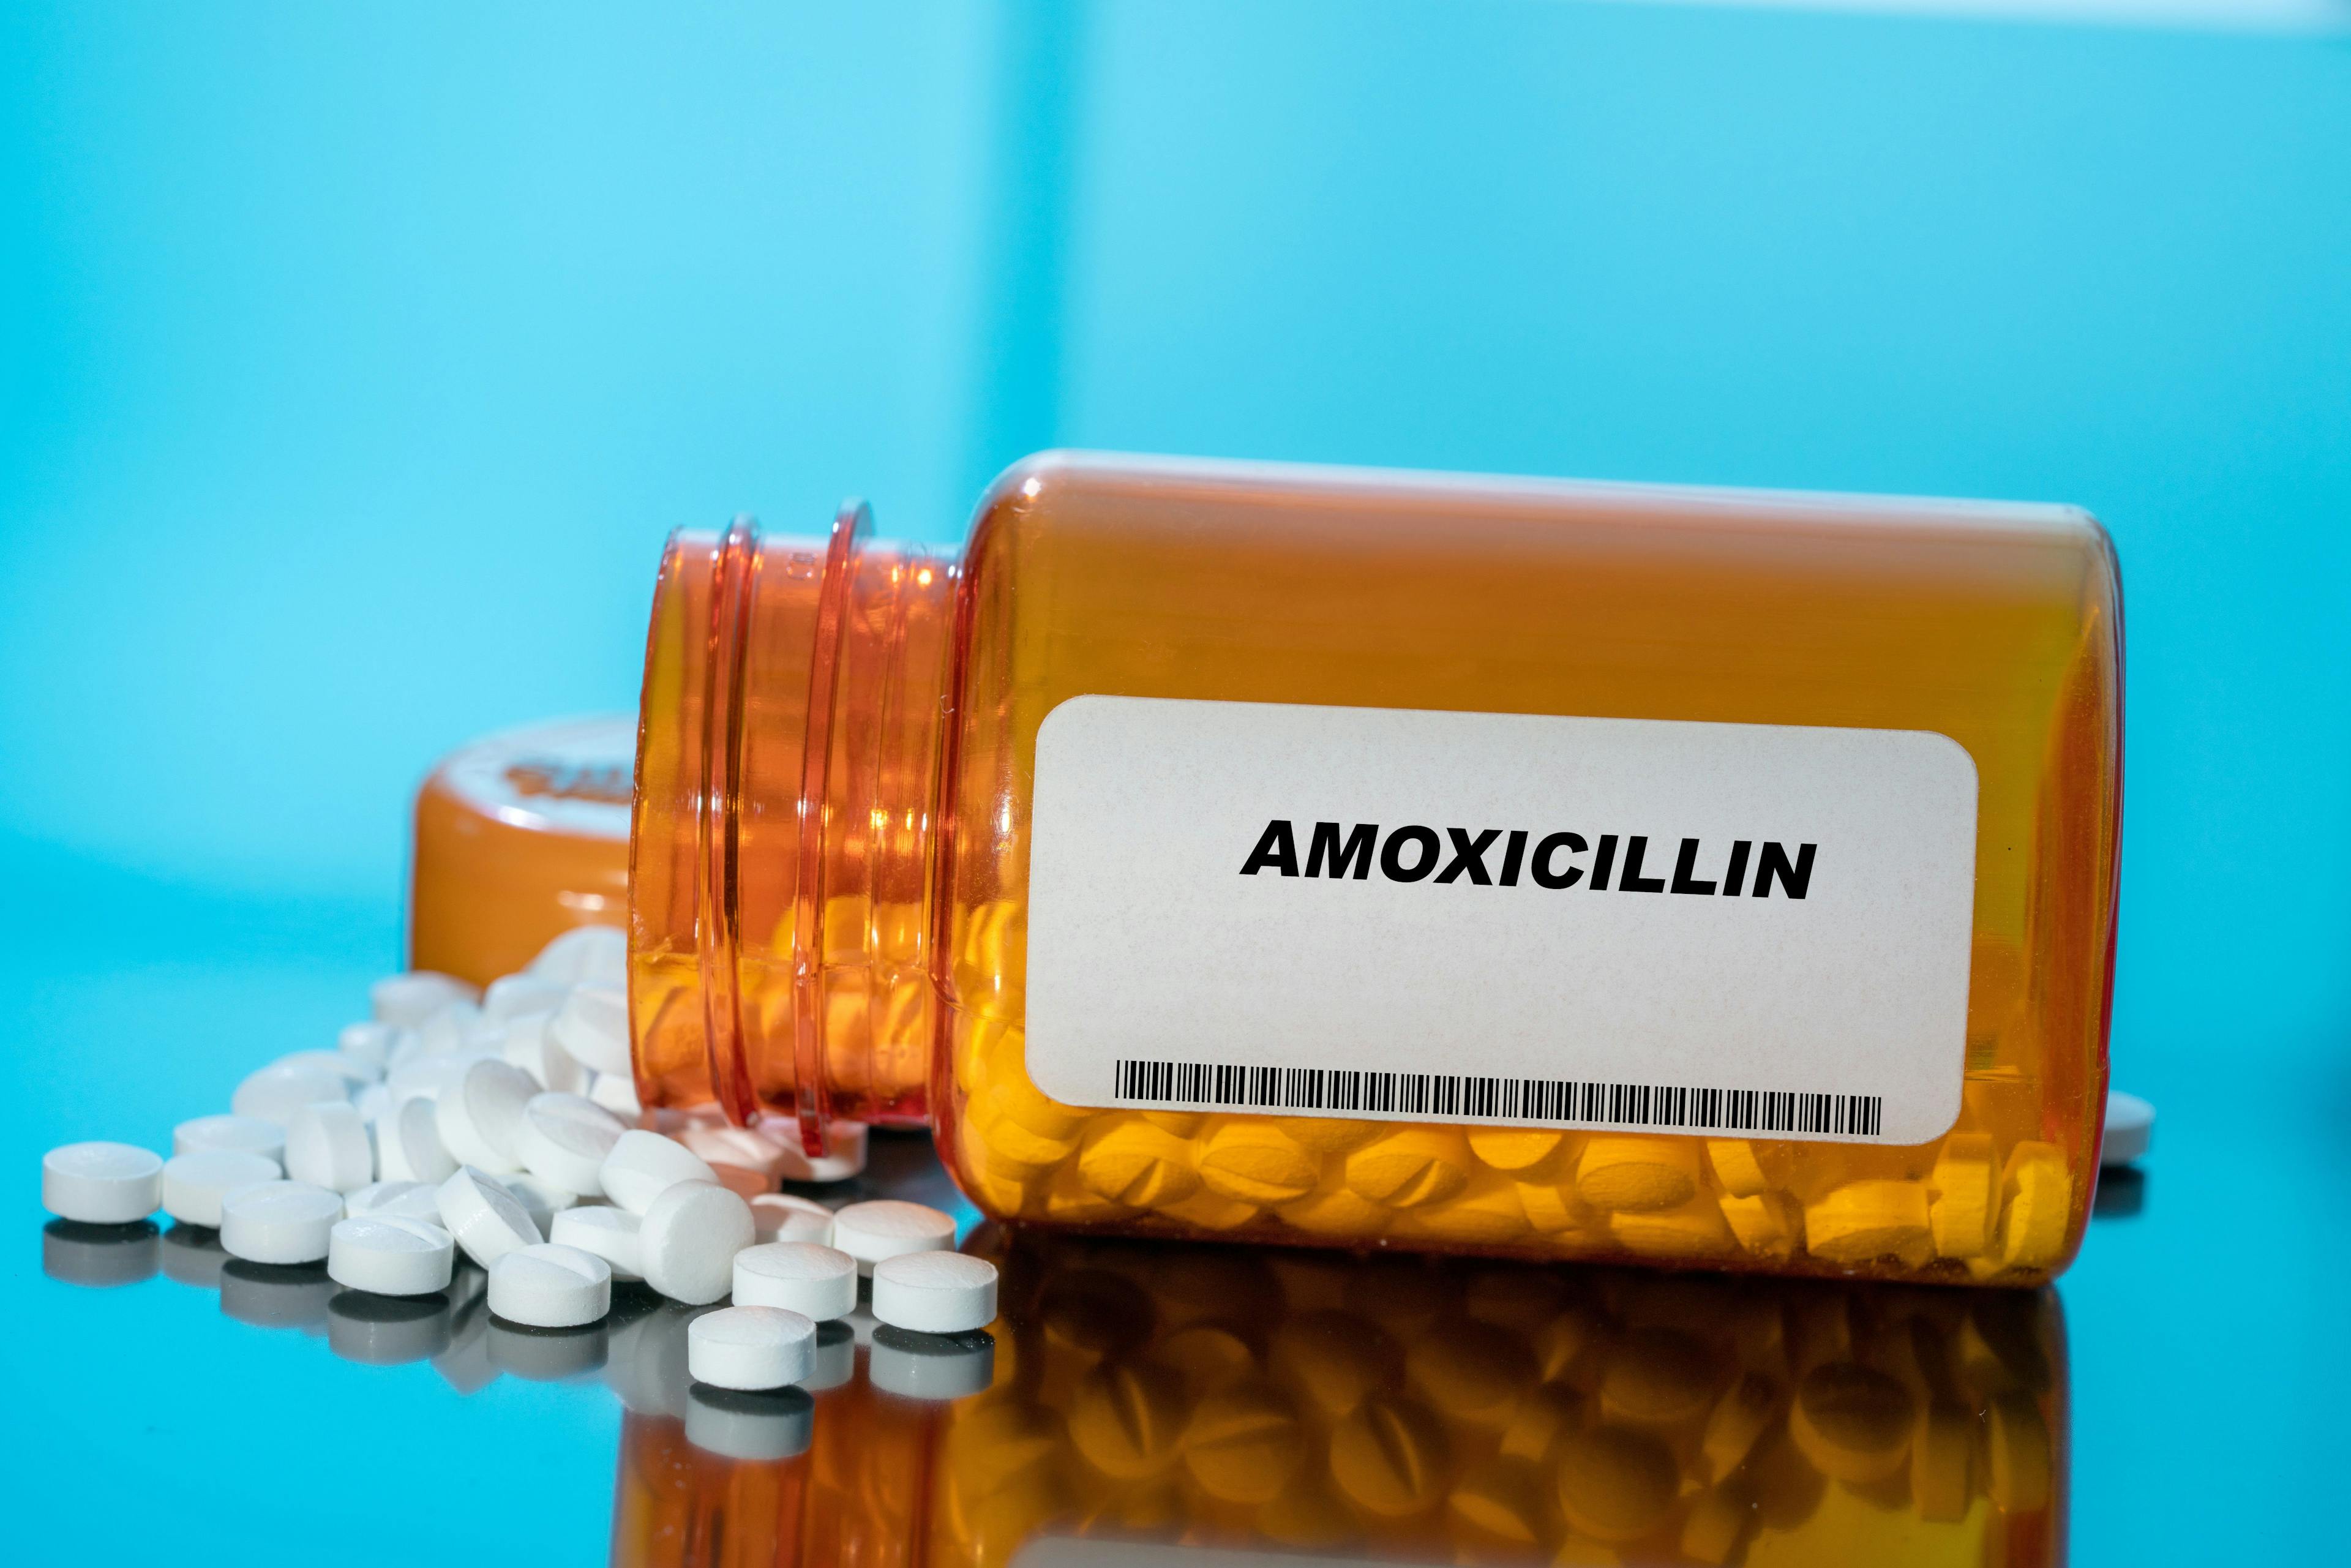 Amoxicillin Shortage Impacting Nearly 75% of Pharmacists Nationwide